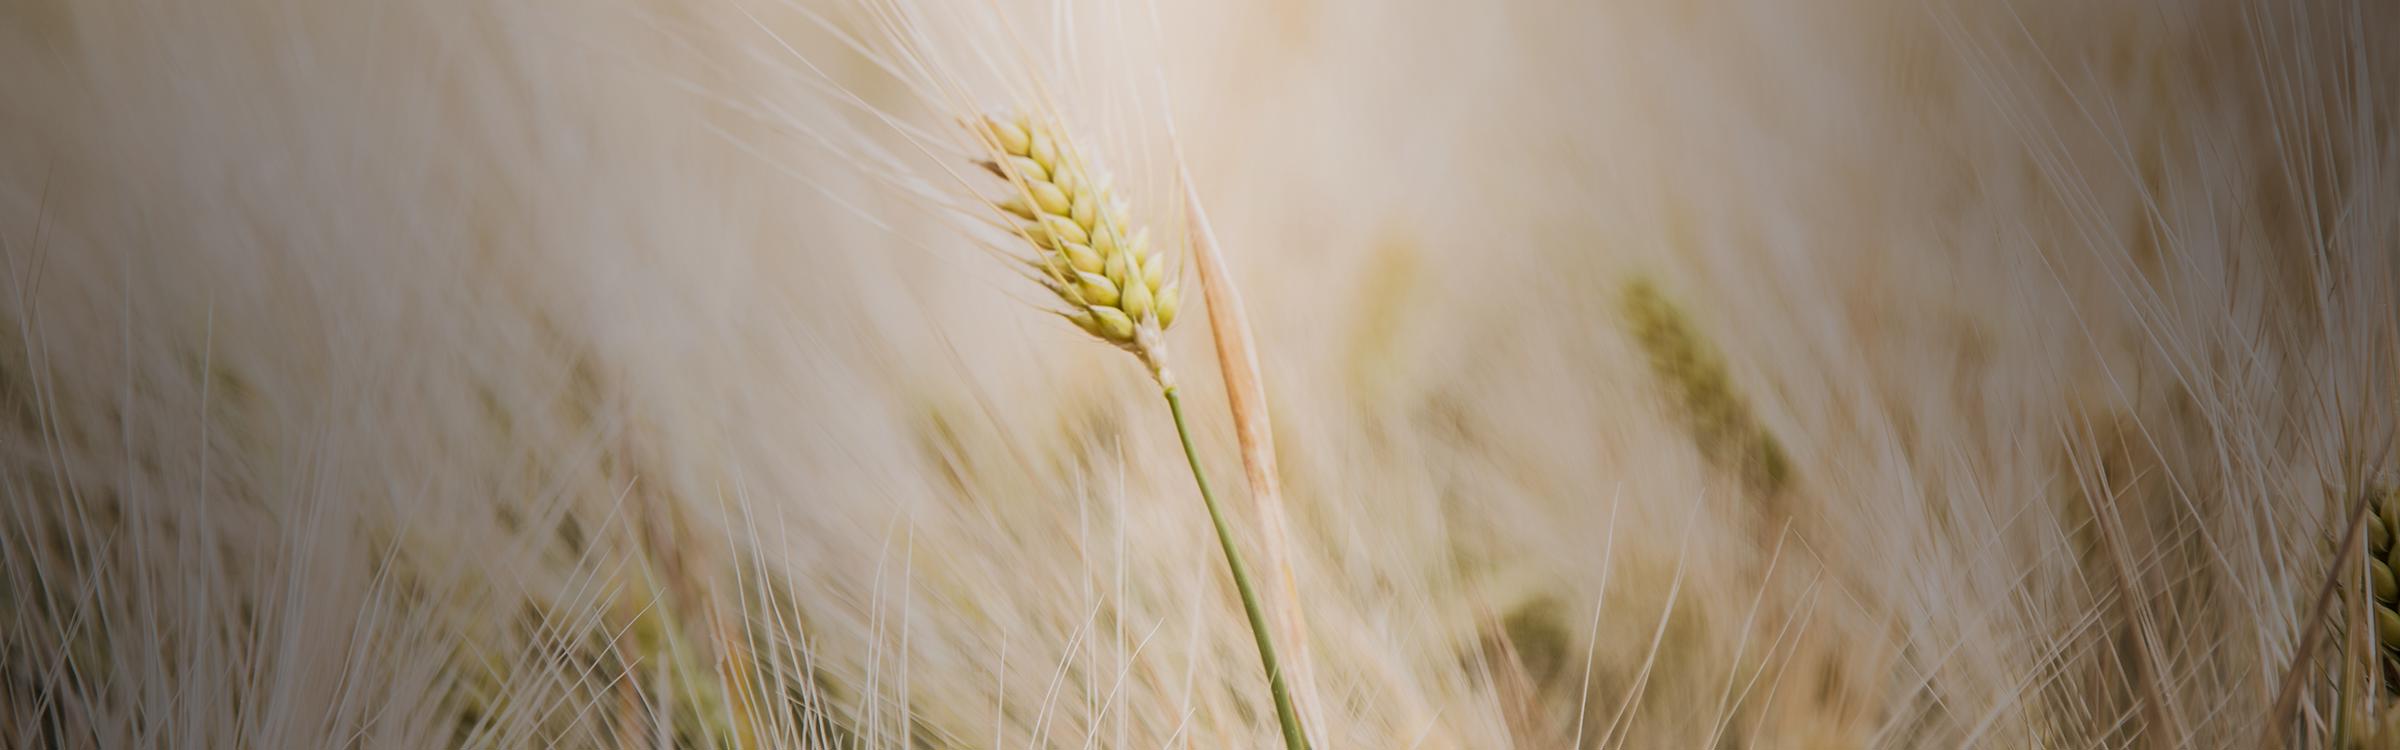 Wheat in a field